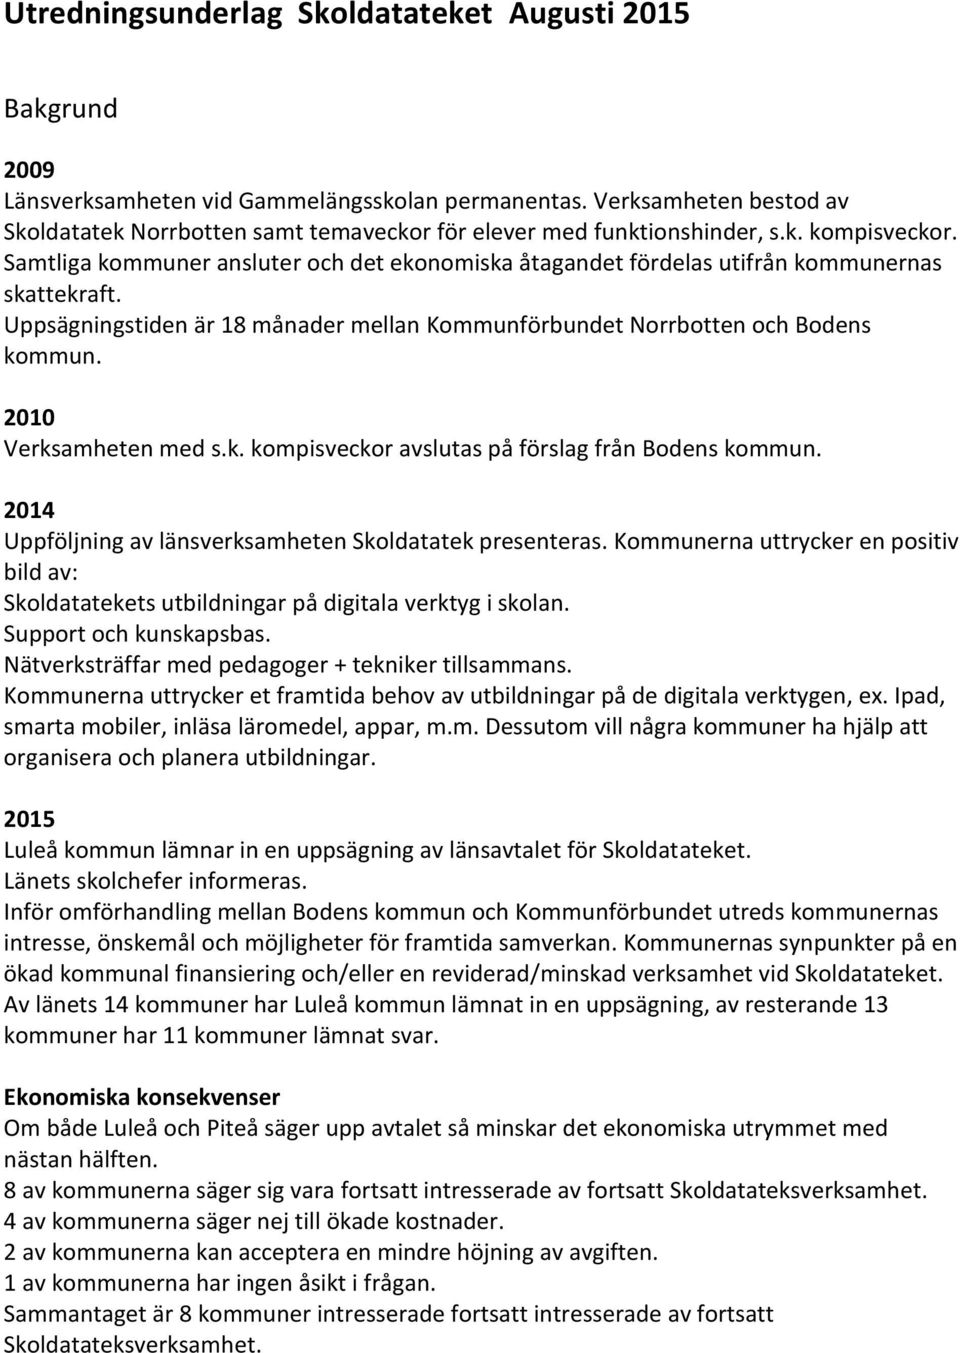 Samtliga kommuner ansluter och det ekonomiska åtagandet fördelas utifrån kommunernas skekraft. Uppsägningstiden är 18 månader mellan Kommunförbundet Norrbotten och Bodens kommun.